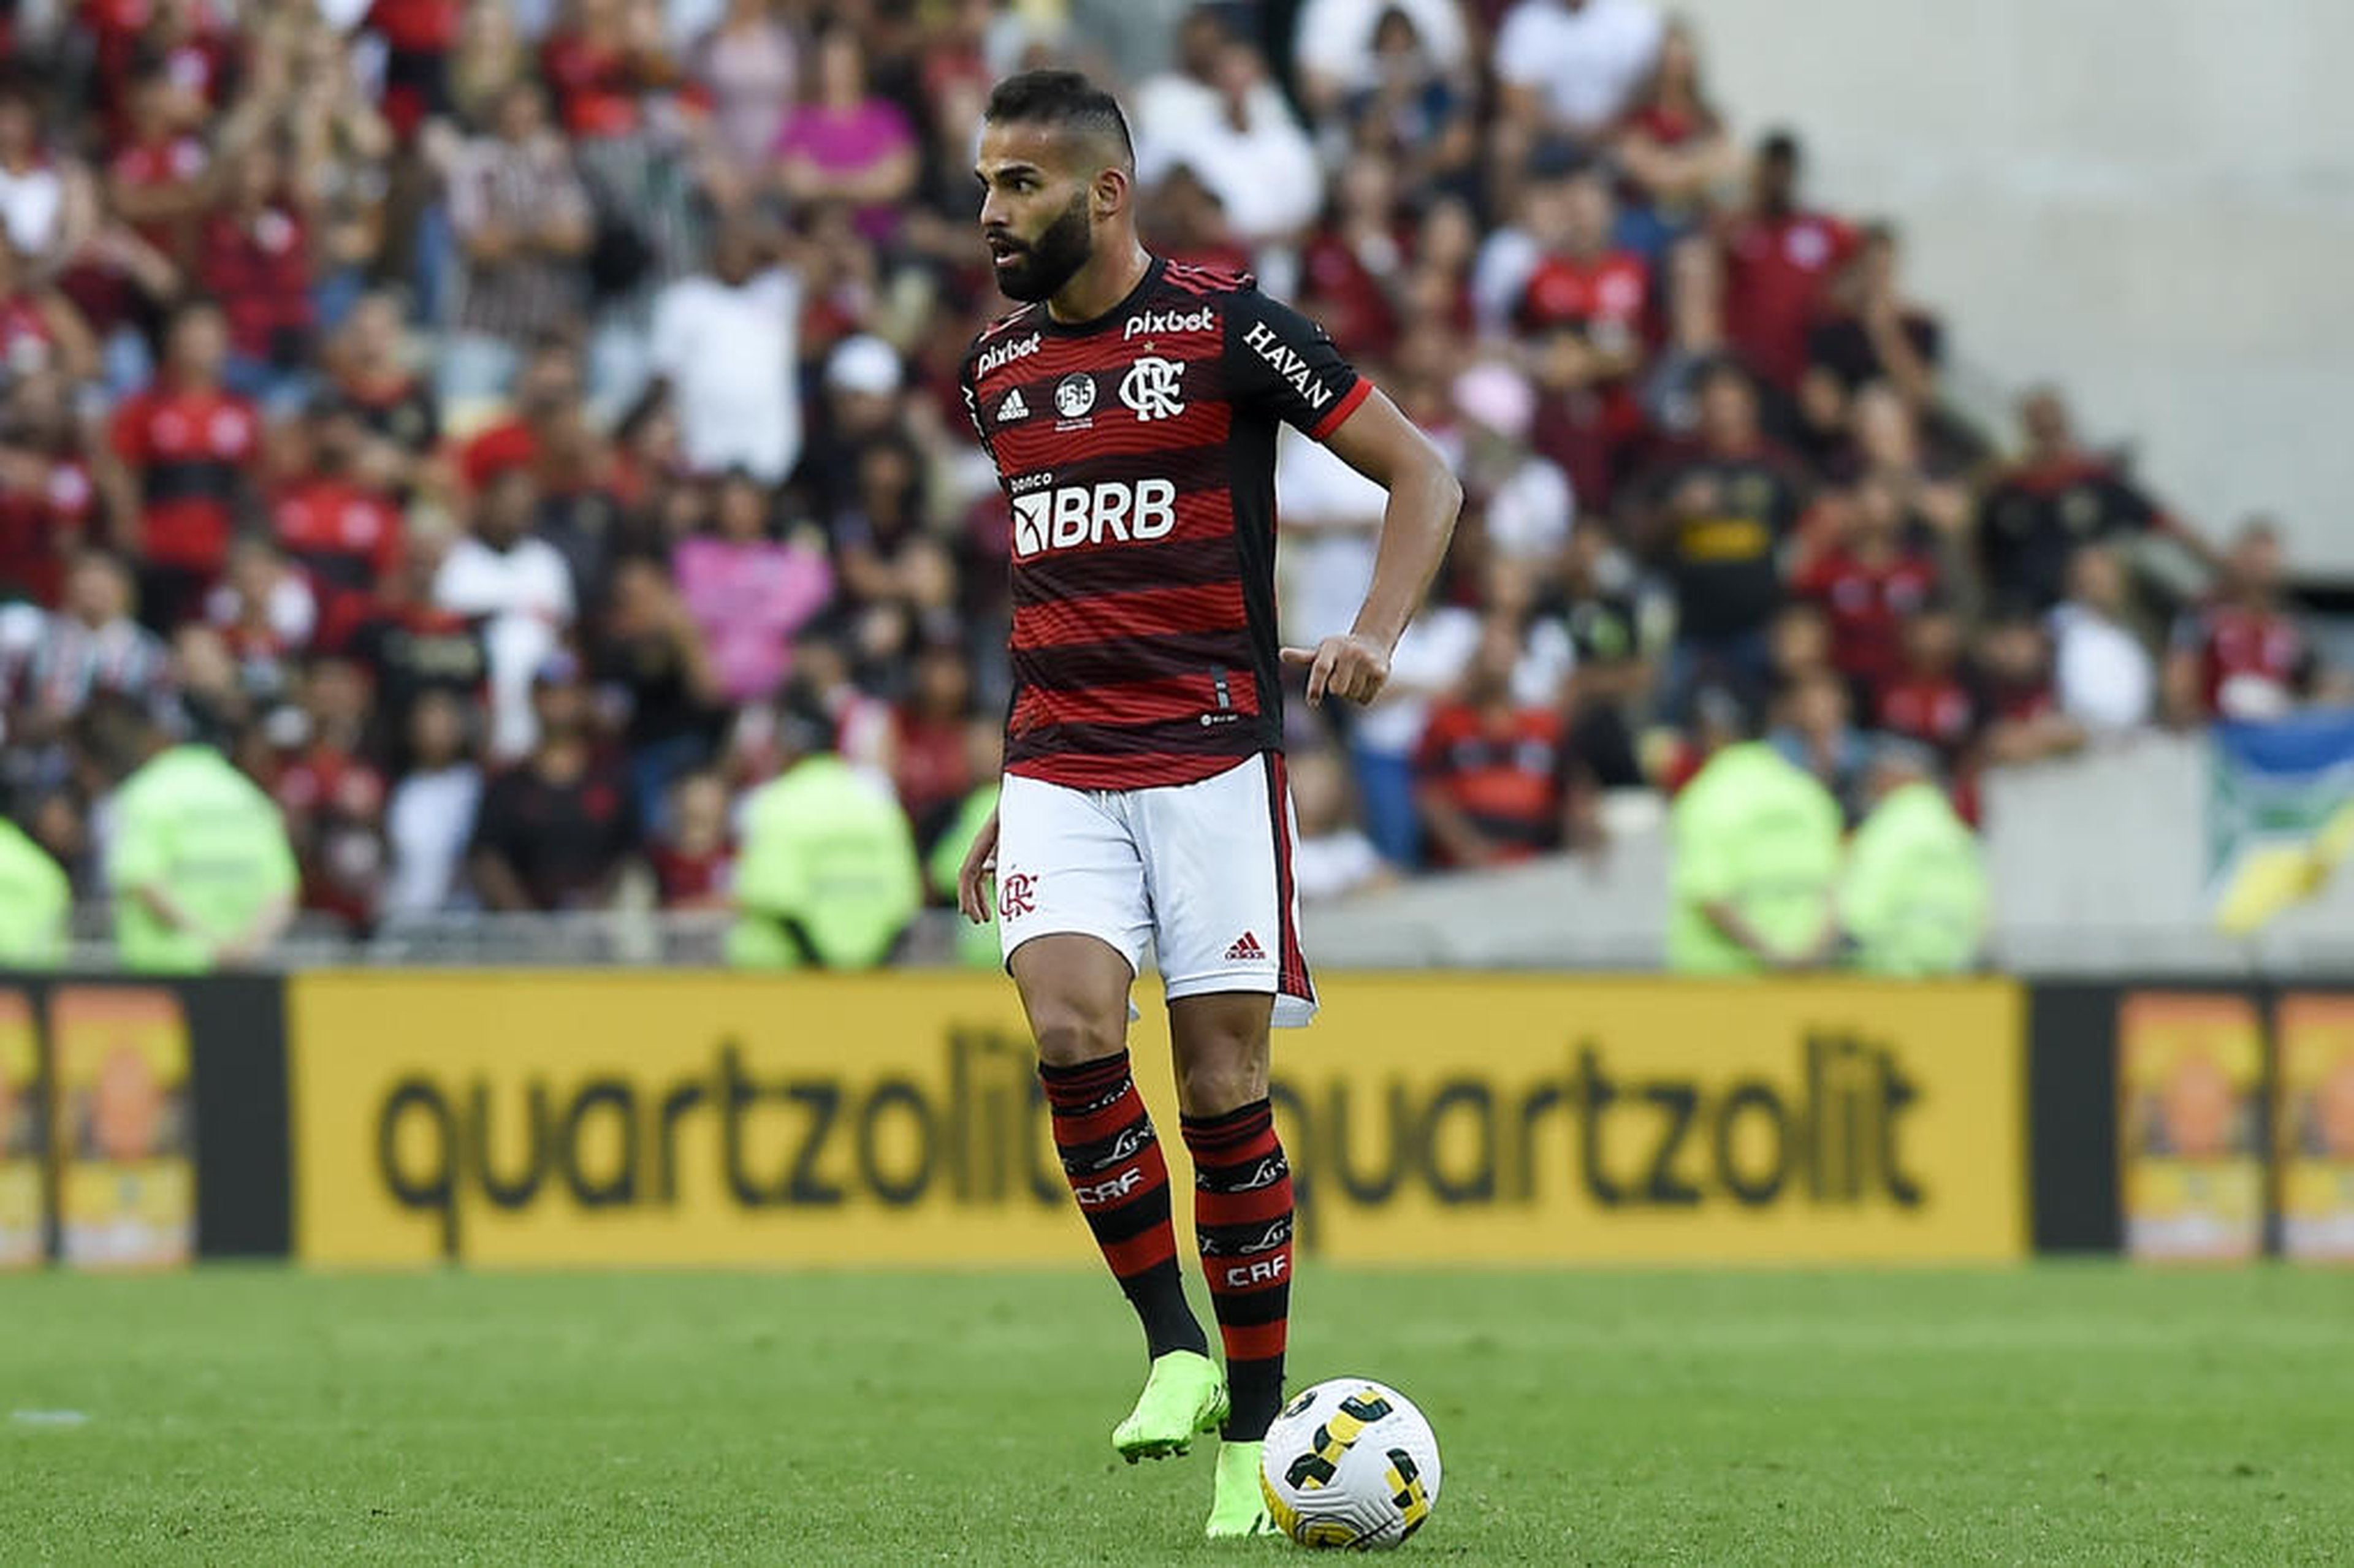 Marcelo Cortes/Flamengo/Divulgação